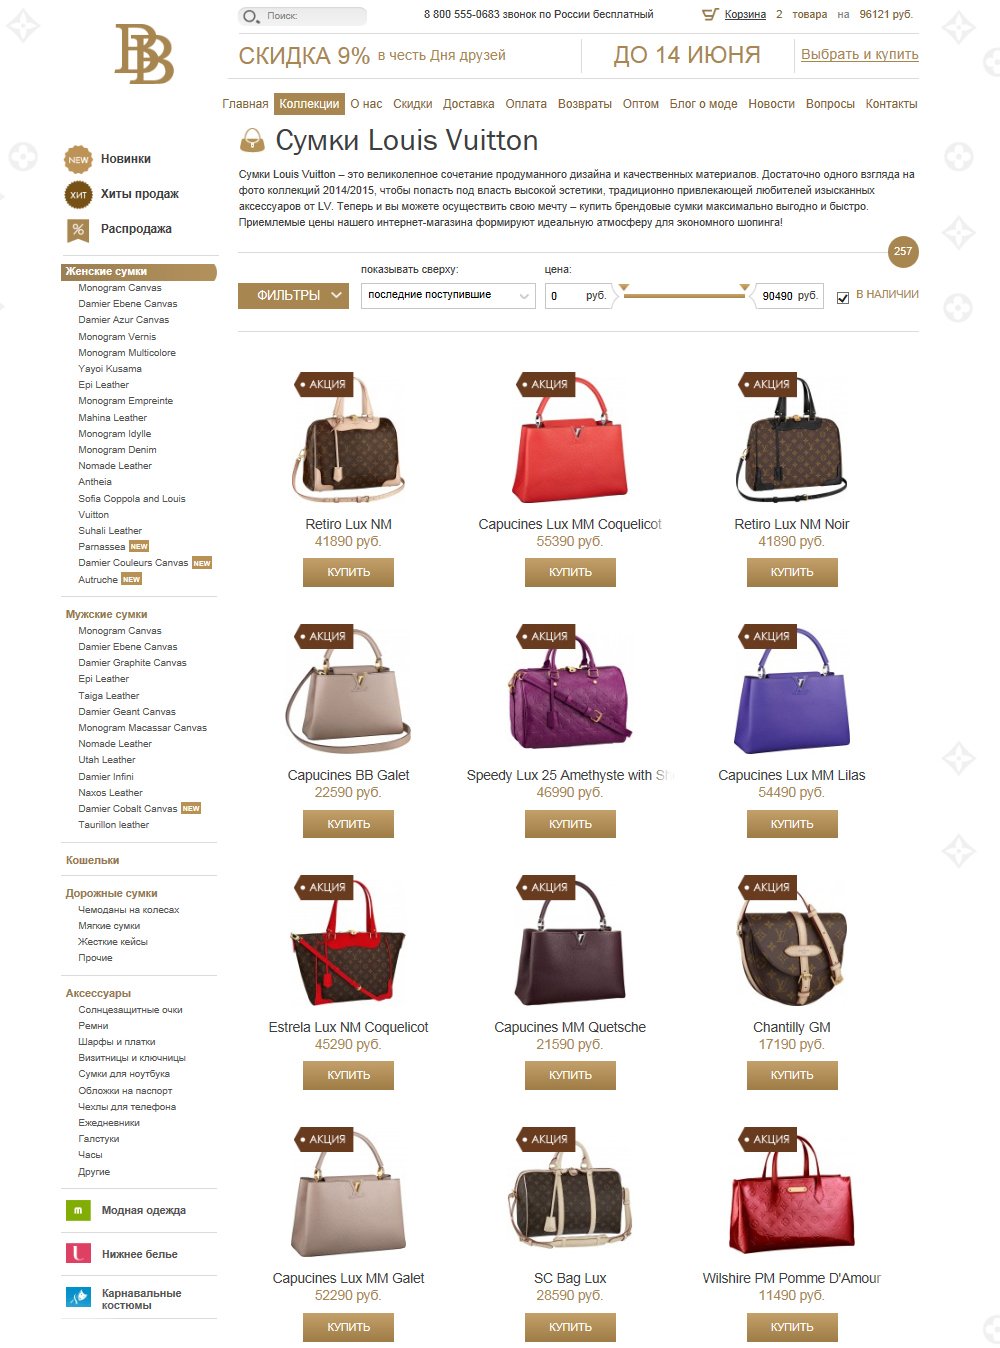 Каталог товаров в интернет-магазине BrandBags.ru